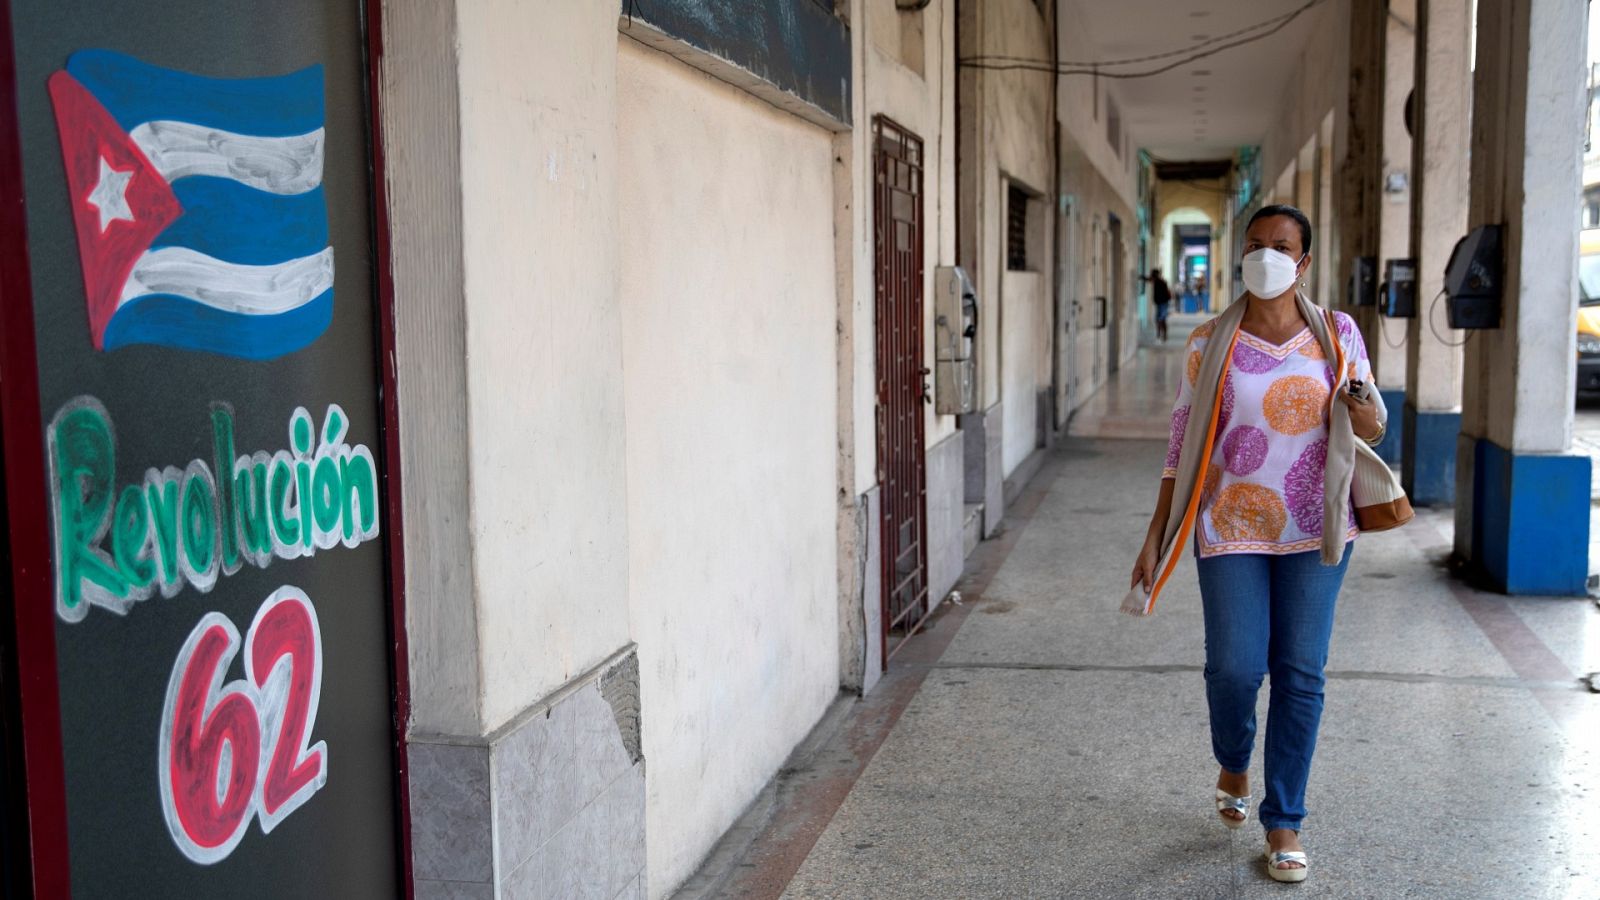 Cuba devuelve a la agencia Efe dos de las credenciales retiradas